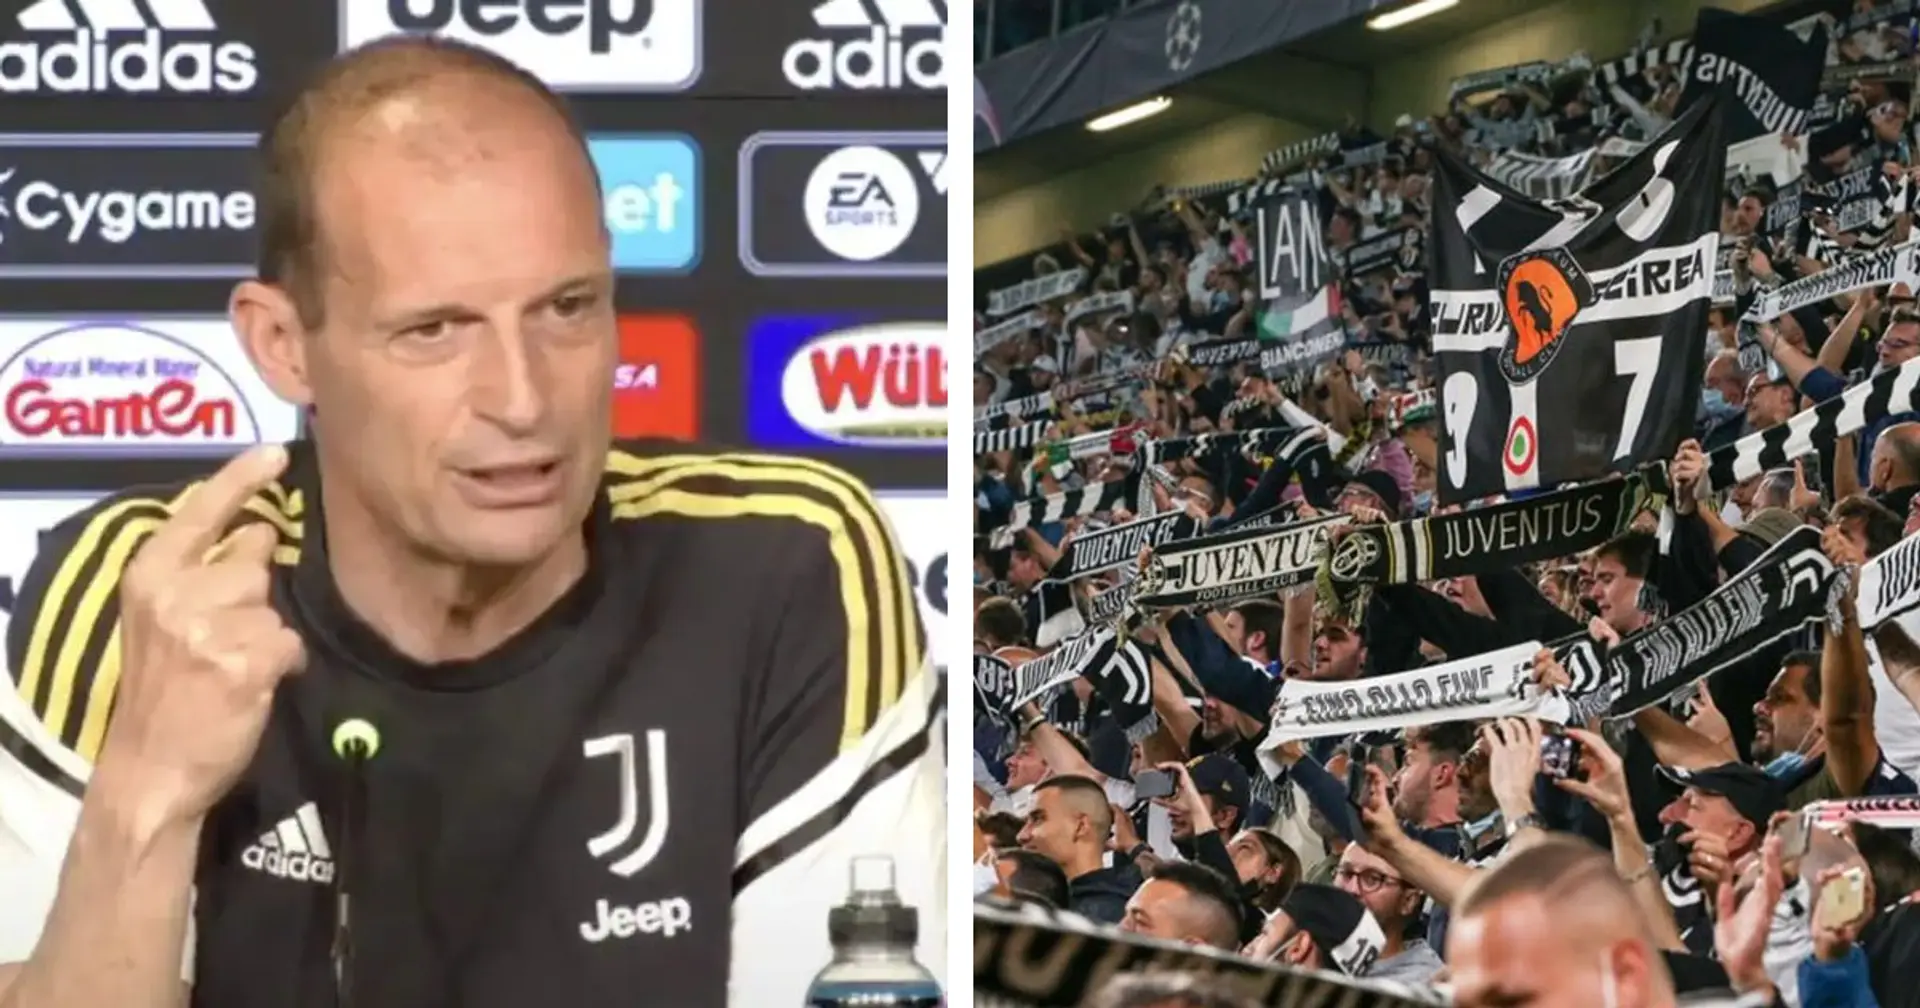 "Narrazione completamente distorta", le dichiarazioni di Allegri scatenano la rabbia dei tifosi della Juventus